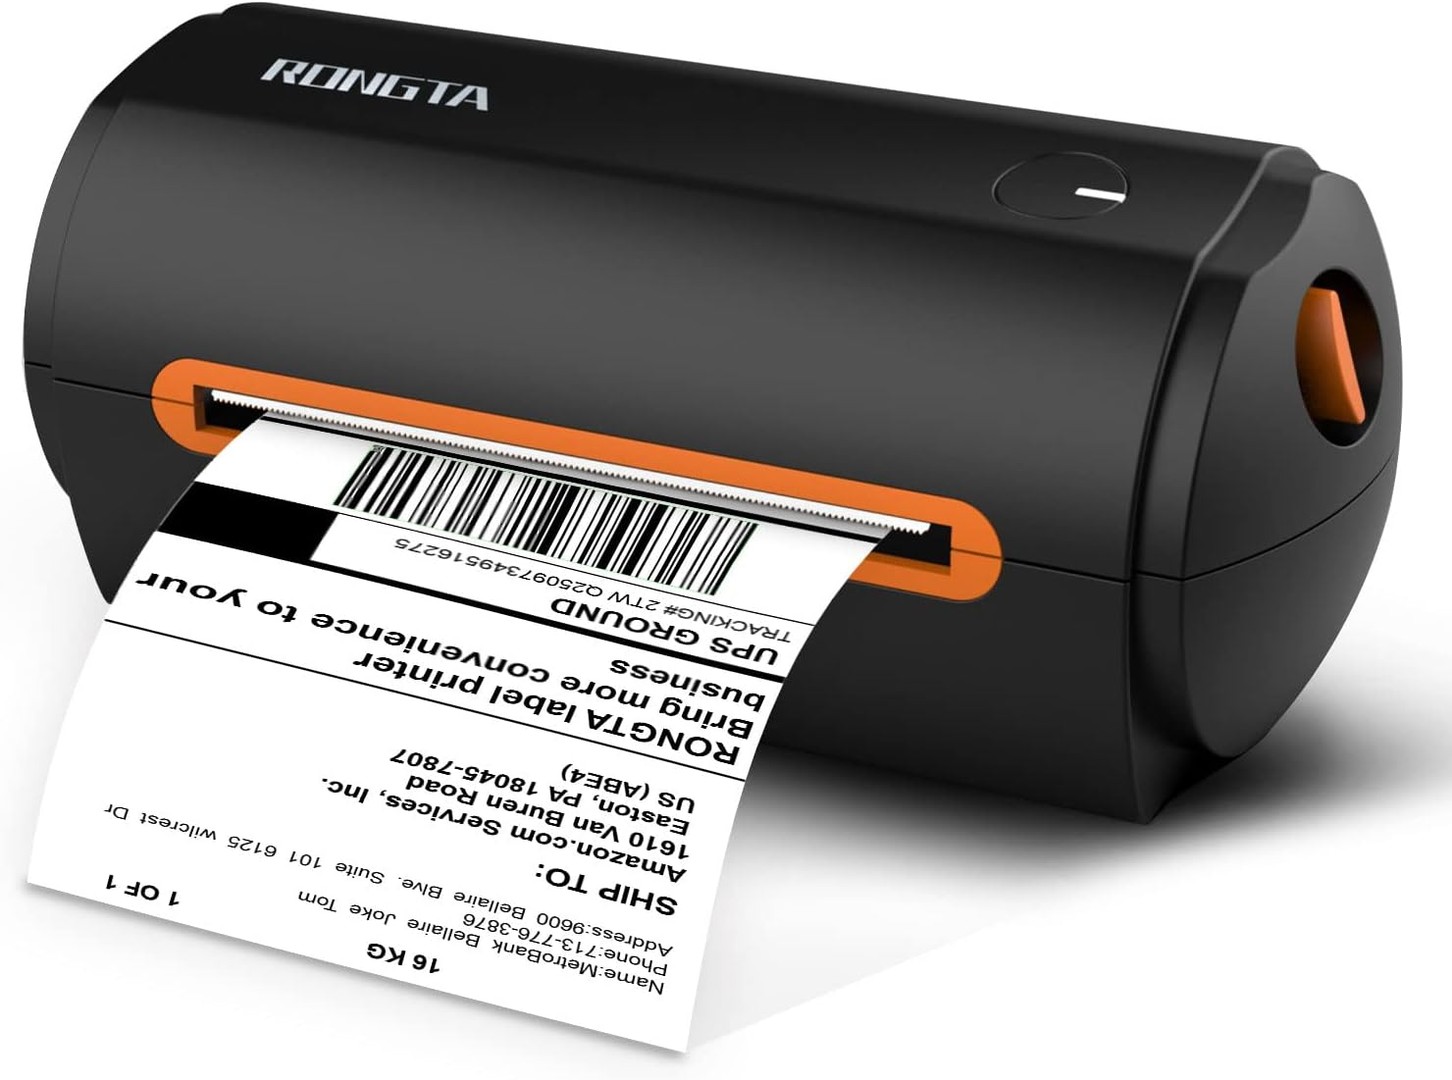 impresoras y scanners - Impresora codigos de barras etiquetas térmicas Rongta